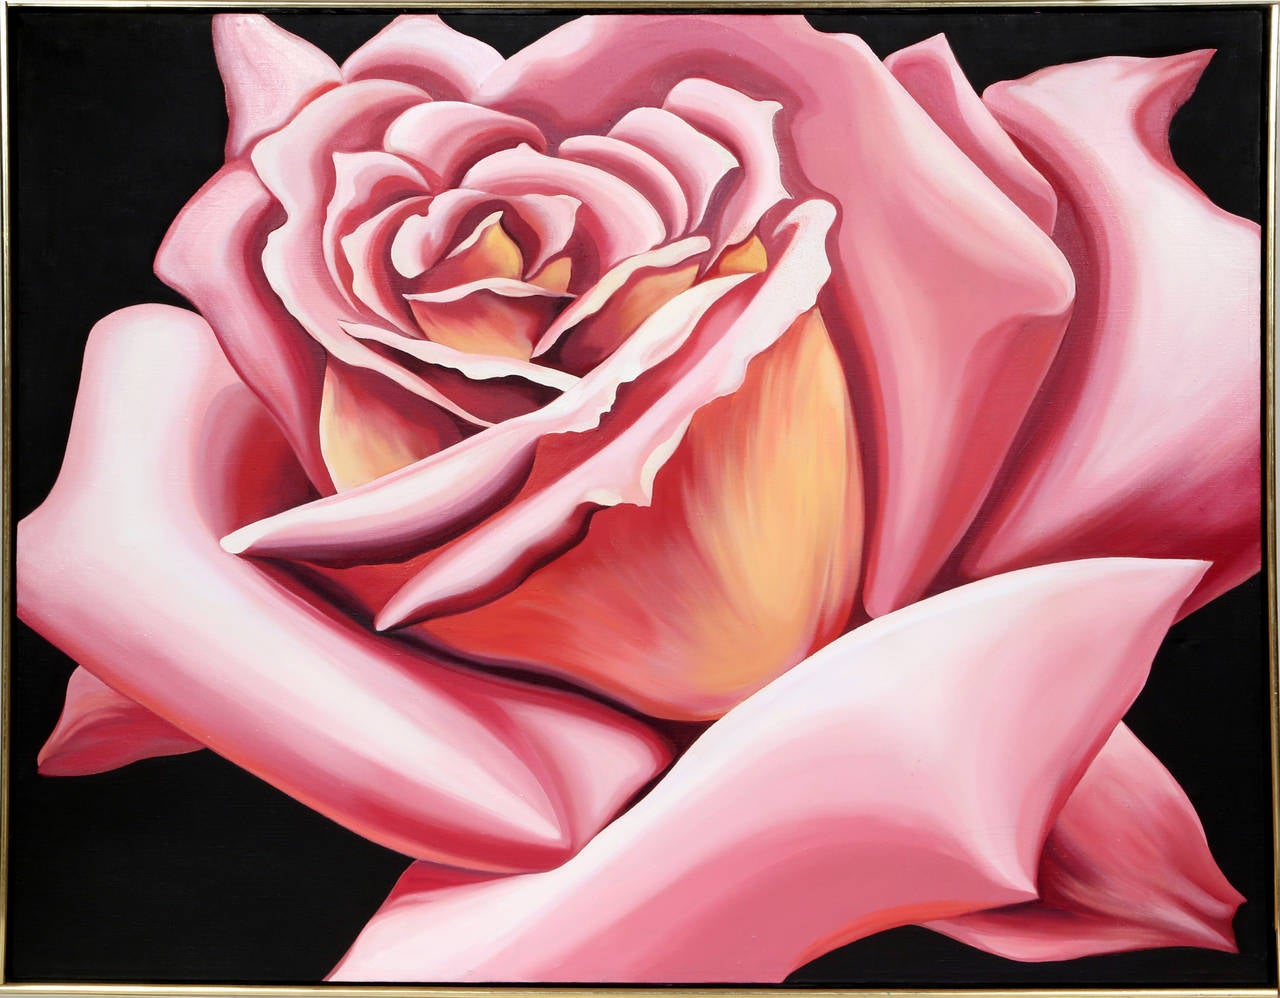 Ein schönes realistisches Gemälde einer Rose des amerikanischen Künstlers Lowell Nesbitt, der sich stark von Georgia O'Keeffe inspirieren ließ.

Künstler: Lowell Blair Nesbitt, Amerikaner (1933 - 1993)
Titel: Rosa Rose
Jahr: 1976
Medium: Öl auf